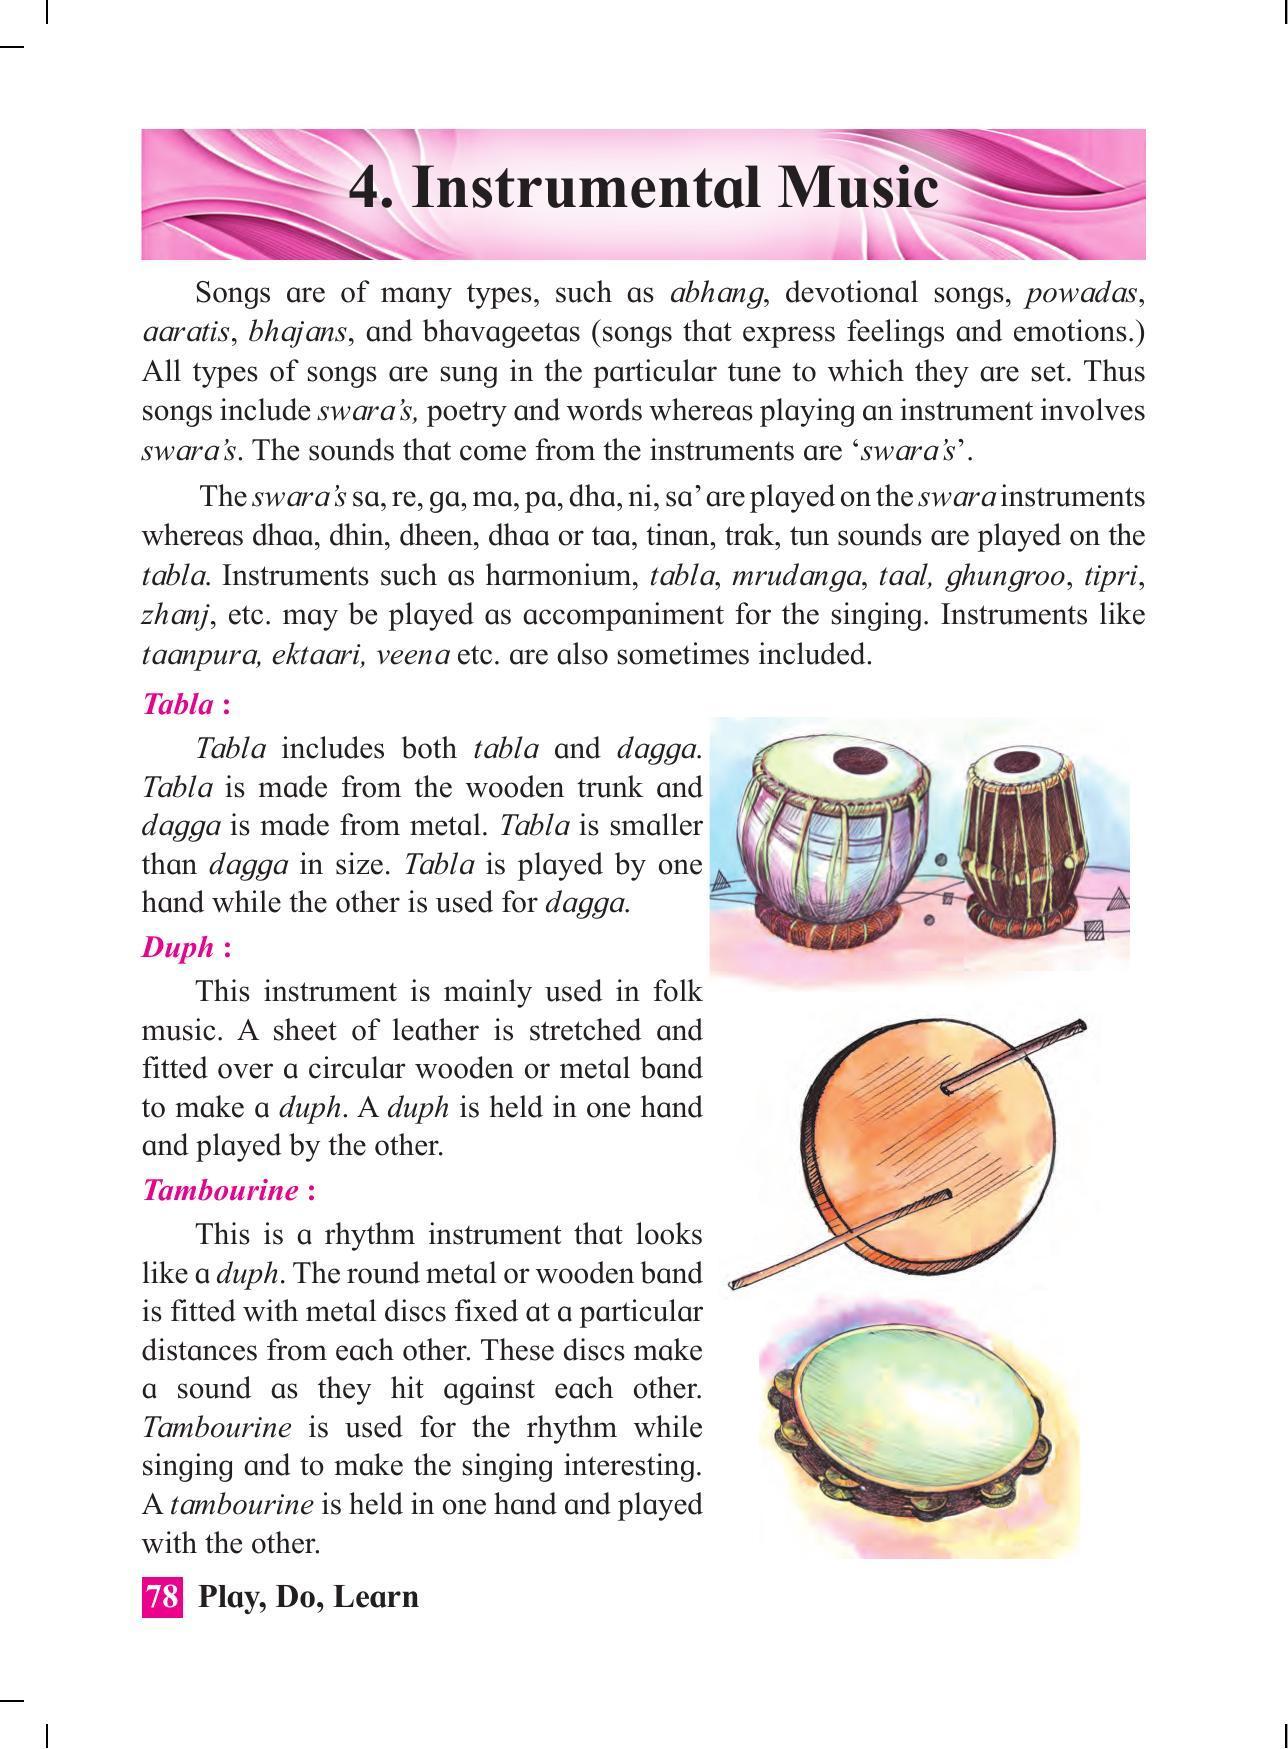 Maharashtra Board Class 4 Play Do Learn (English Medium) Textbook - Page 87